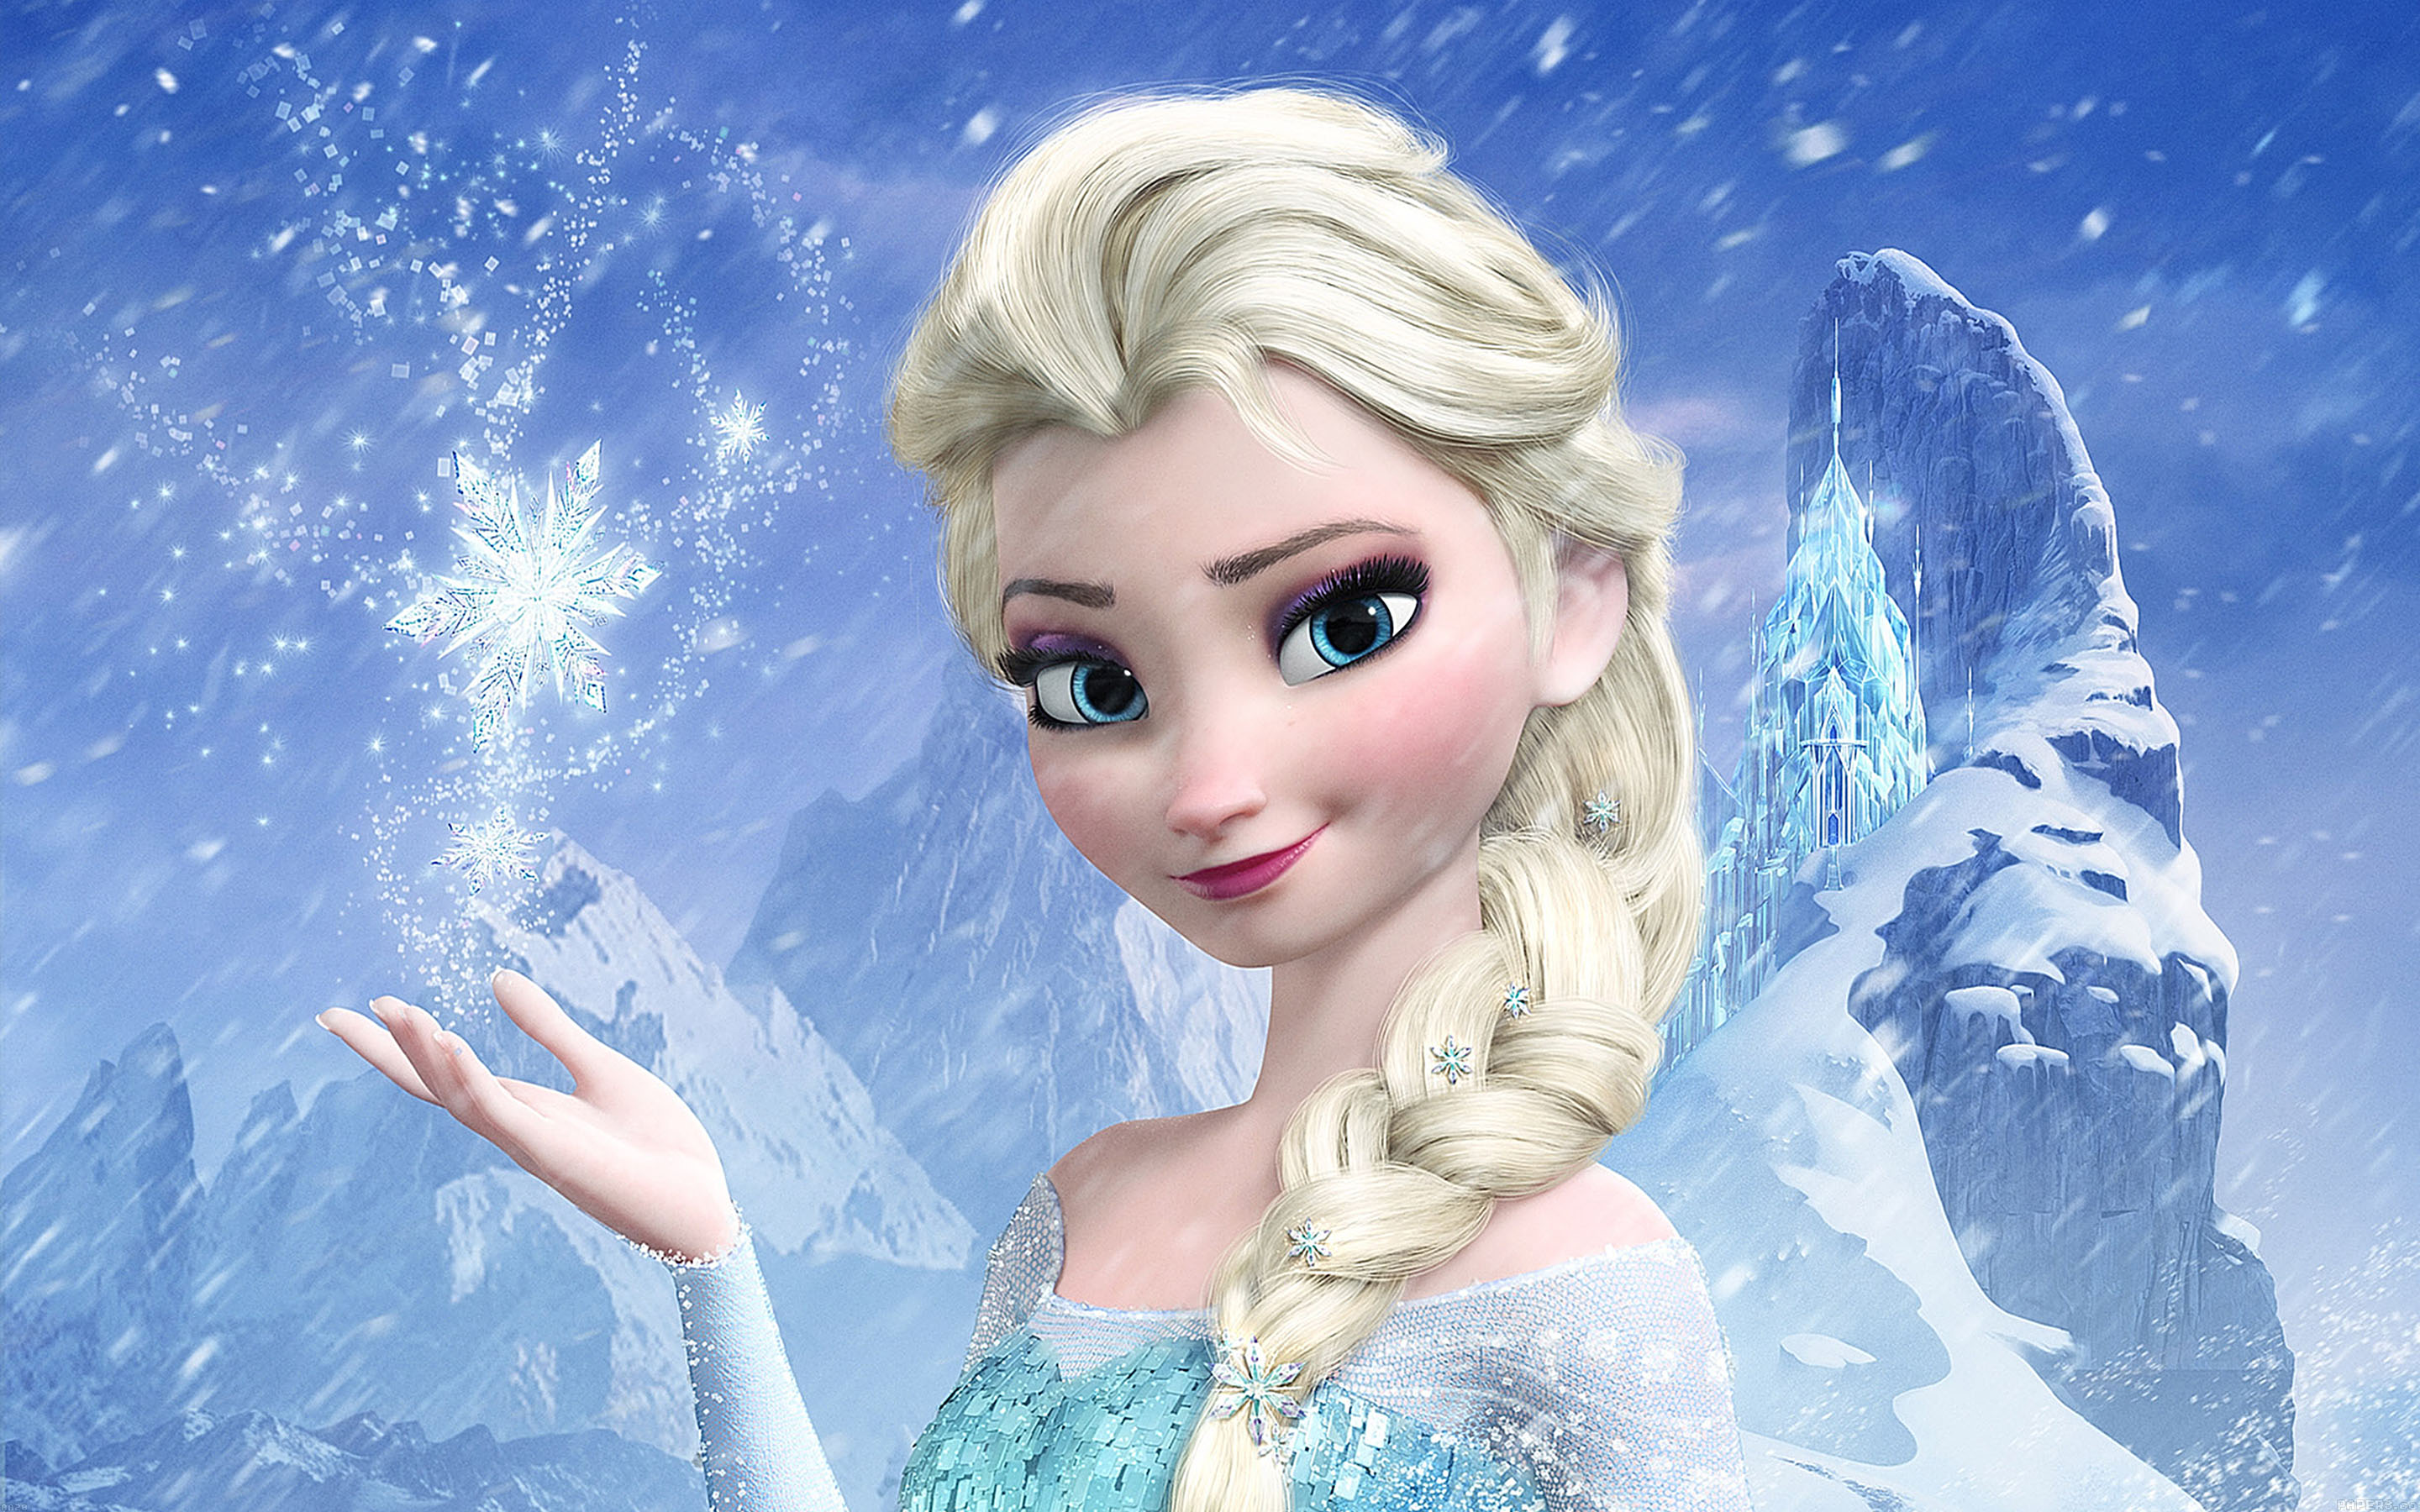  Mơ thấy công chúa tuyết đánh con gì trúng lớn?